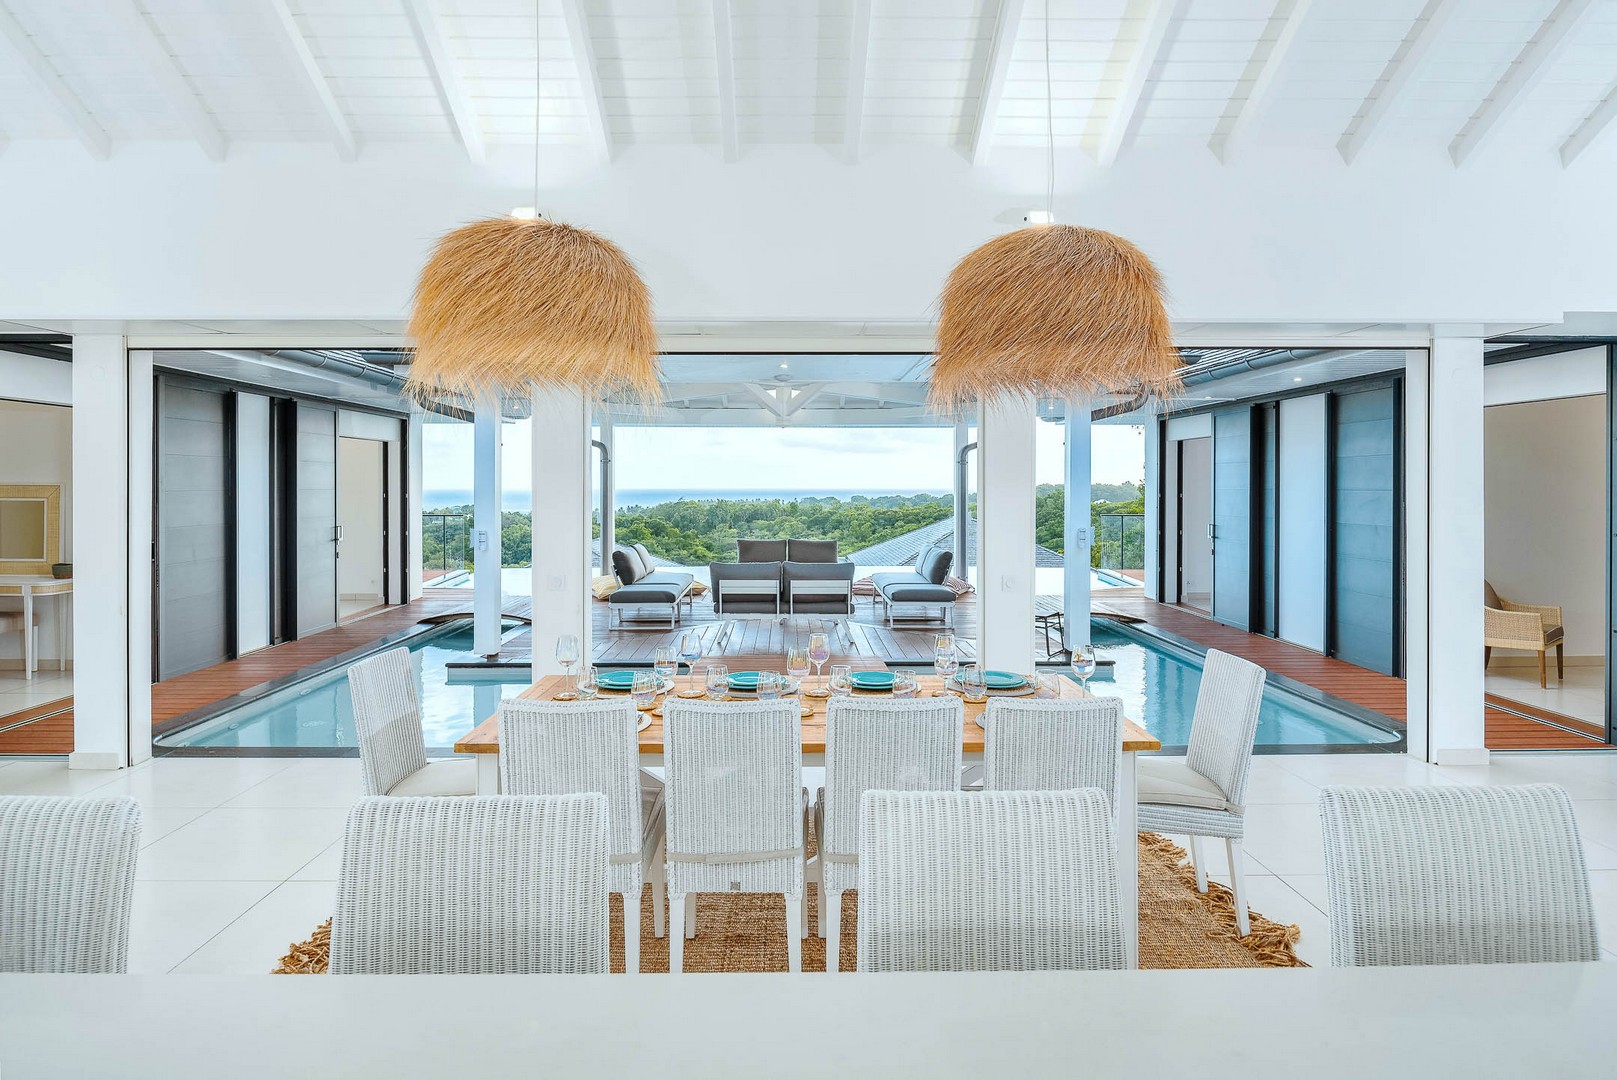 villa vista del mar louer maison avec piscine bord de mer été location standing vacances guadeloupe